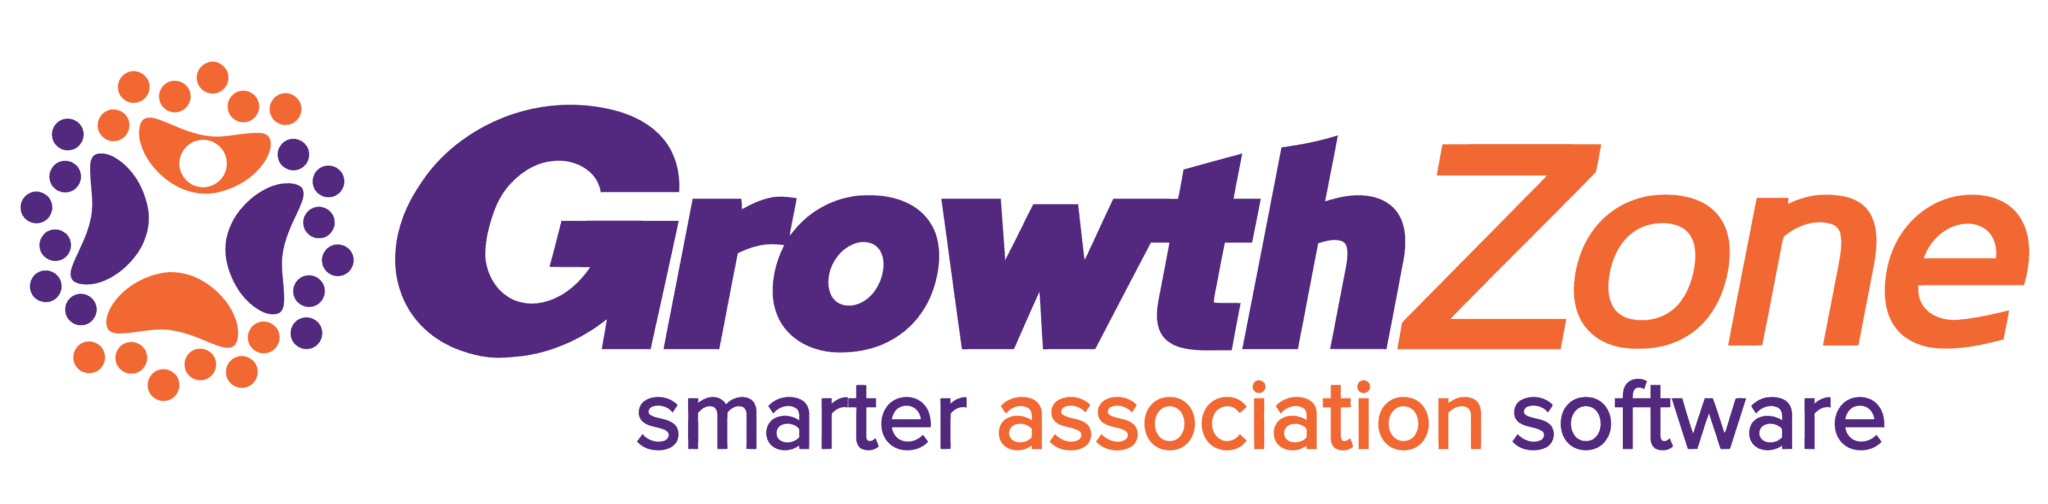 image of growthzone logo